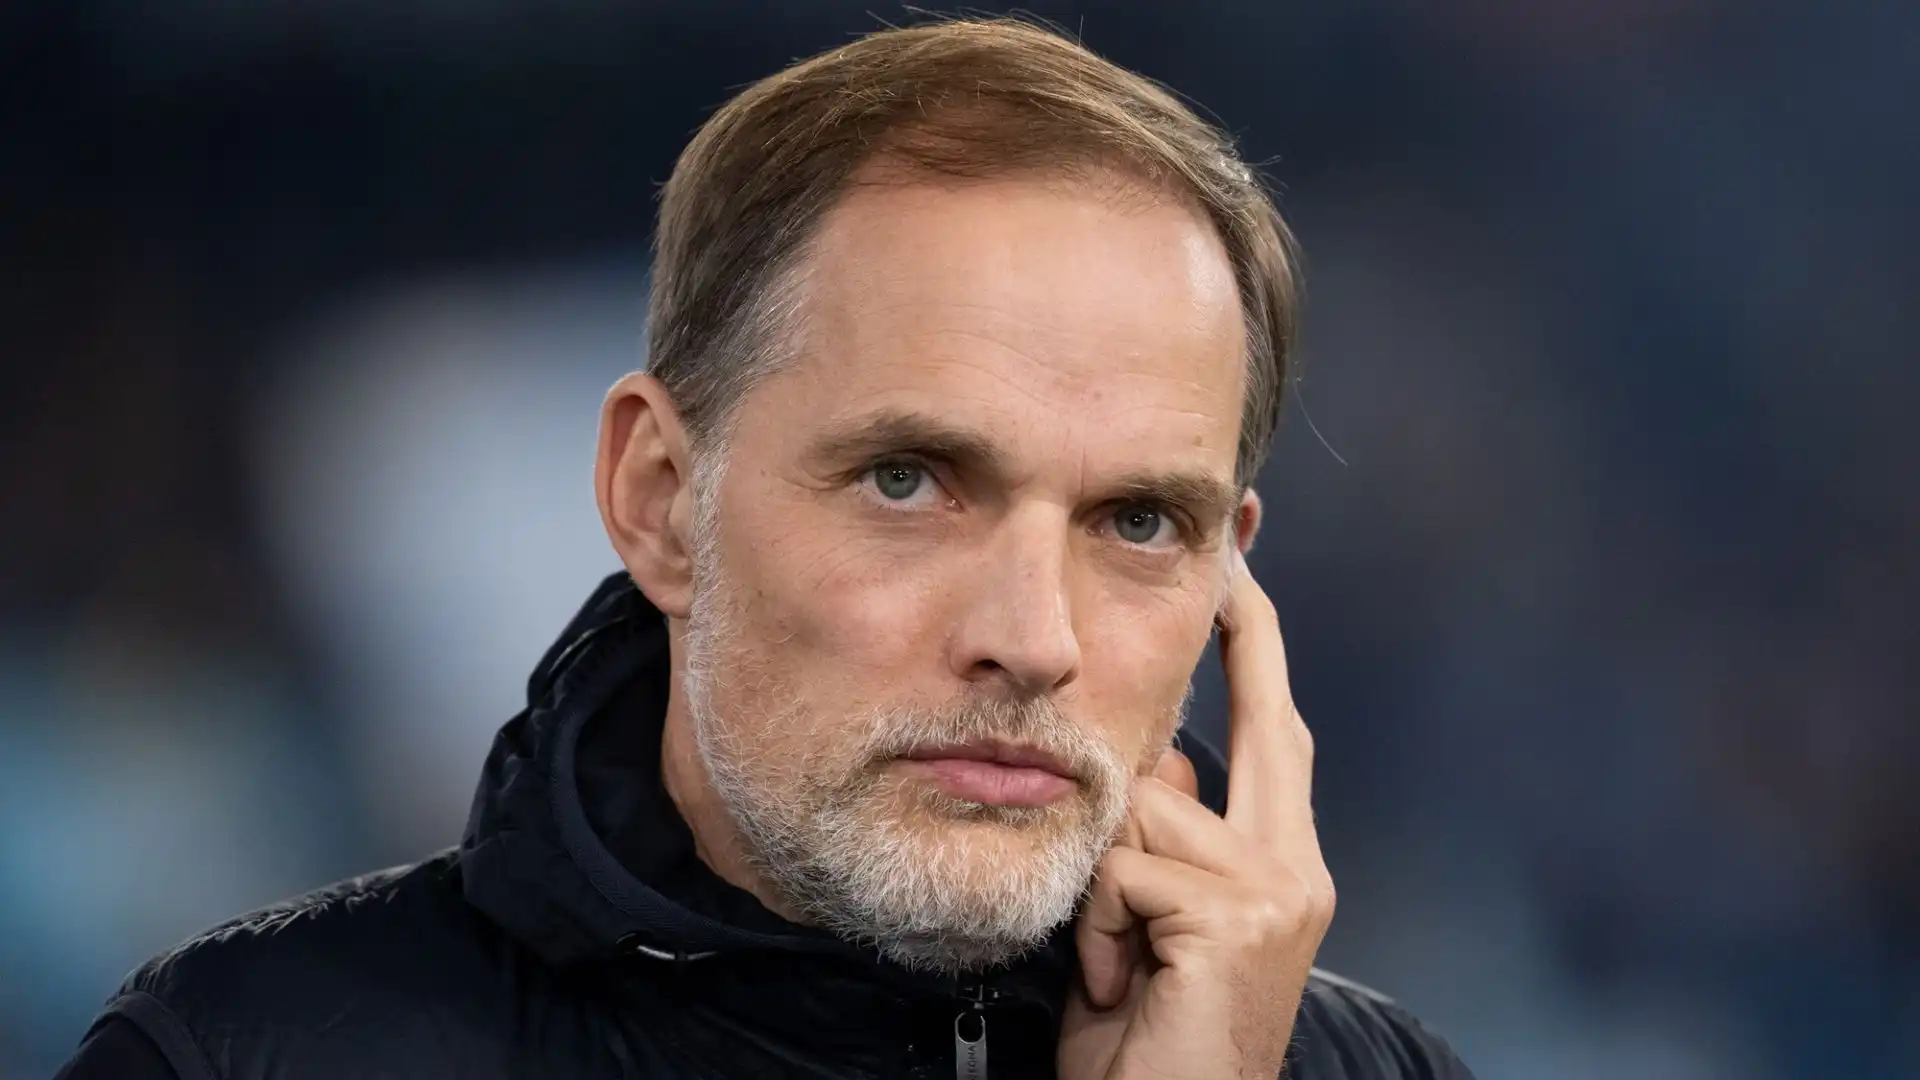 Tuchel è diventato il primo allenatore tedesco a raggiungere le semifinali di Champions League con tre club diversi (PSG, Chelsea e Bayern Monaco)